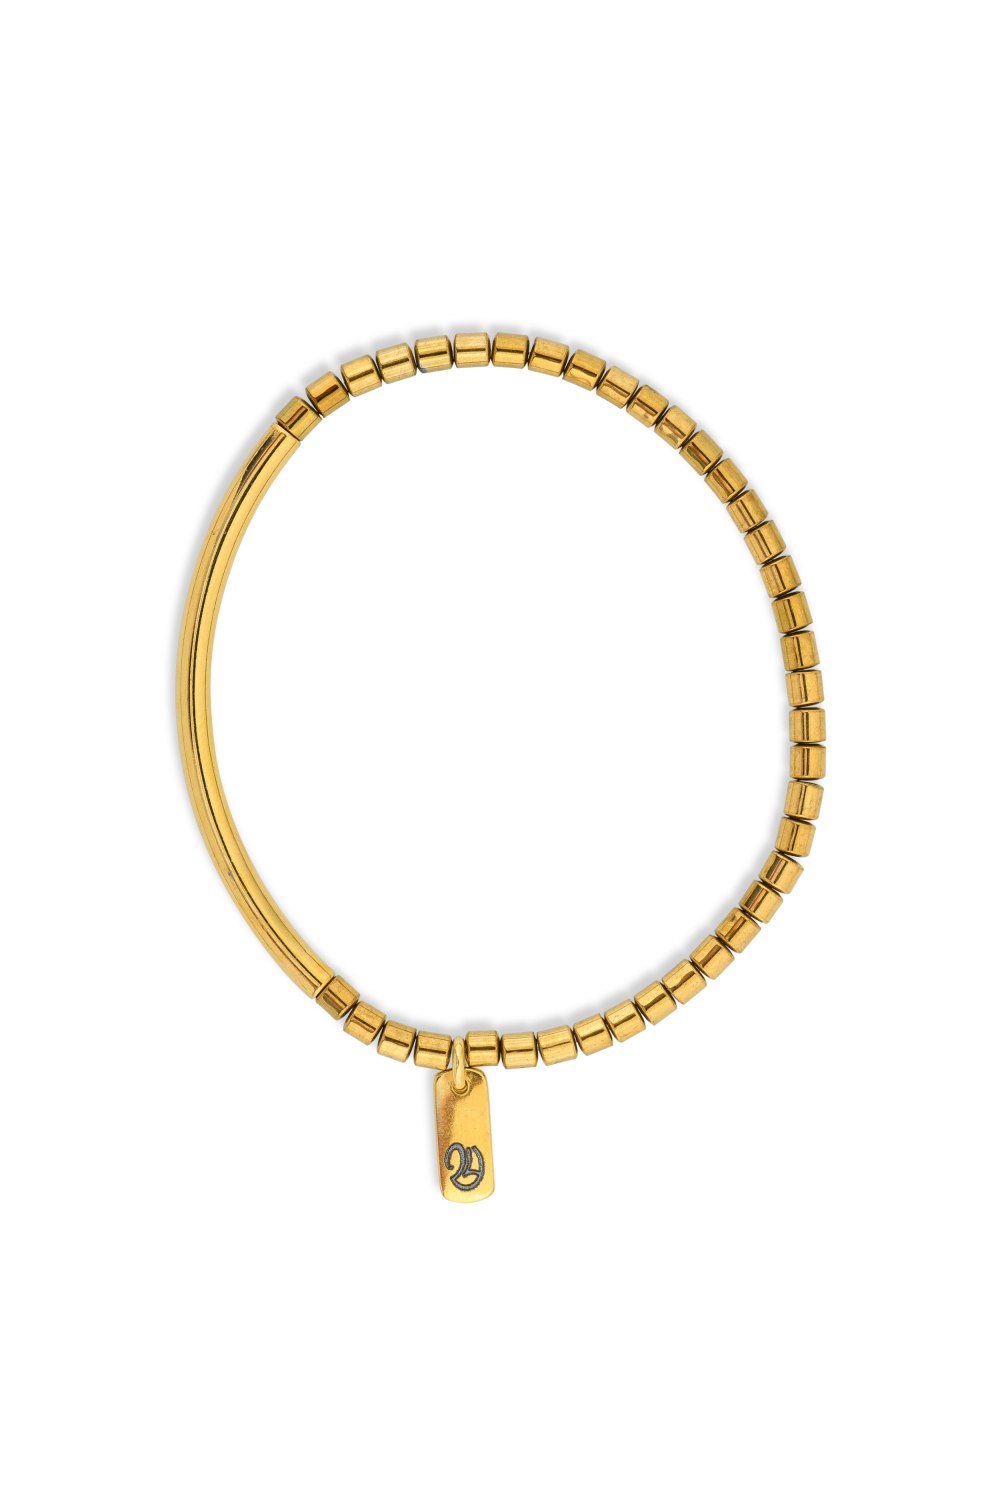 KESSARIS - Lucky Charm Happy 24 Hematite Bracelet